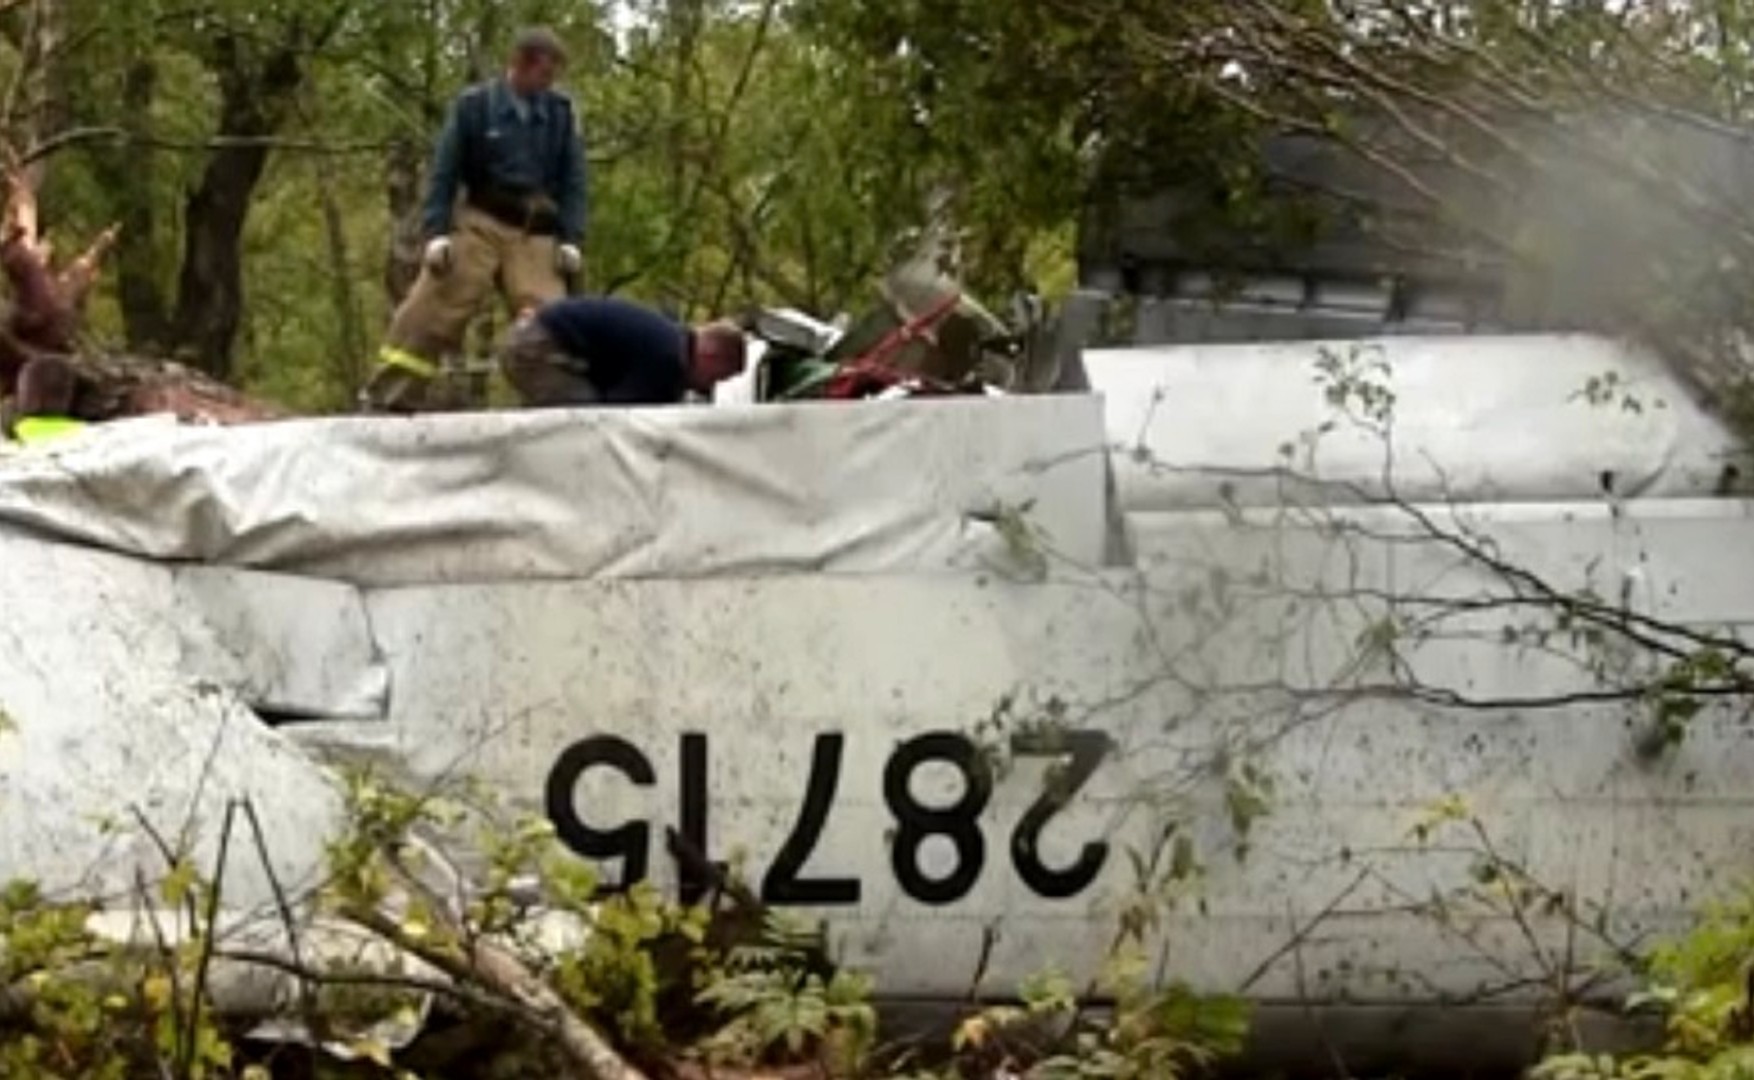 Пасажирський літак Ан-26, який зник з екранів радарів незадовго до посадки, зіткнувся зі скелею. На борту було понад 20 осіб